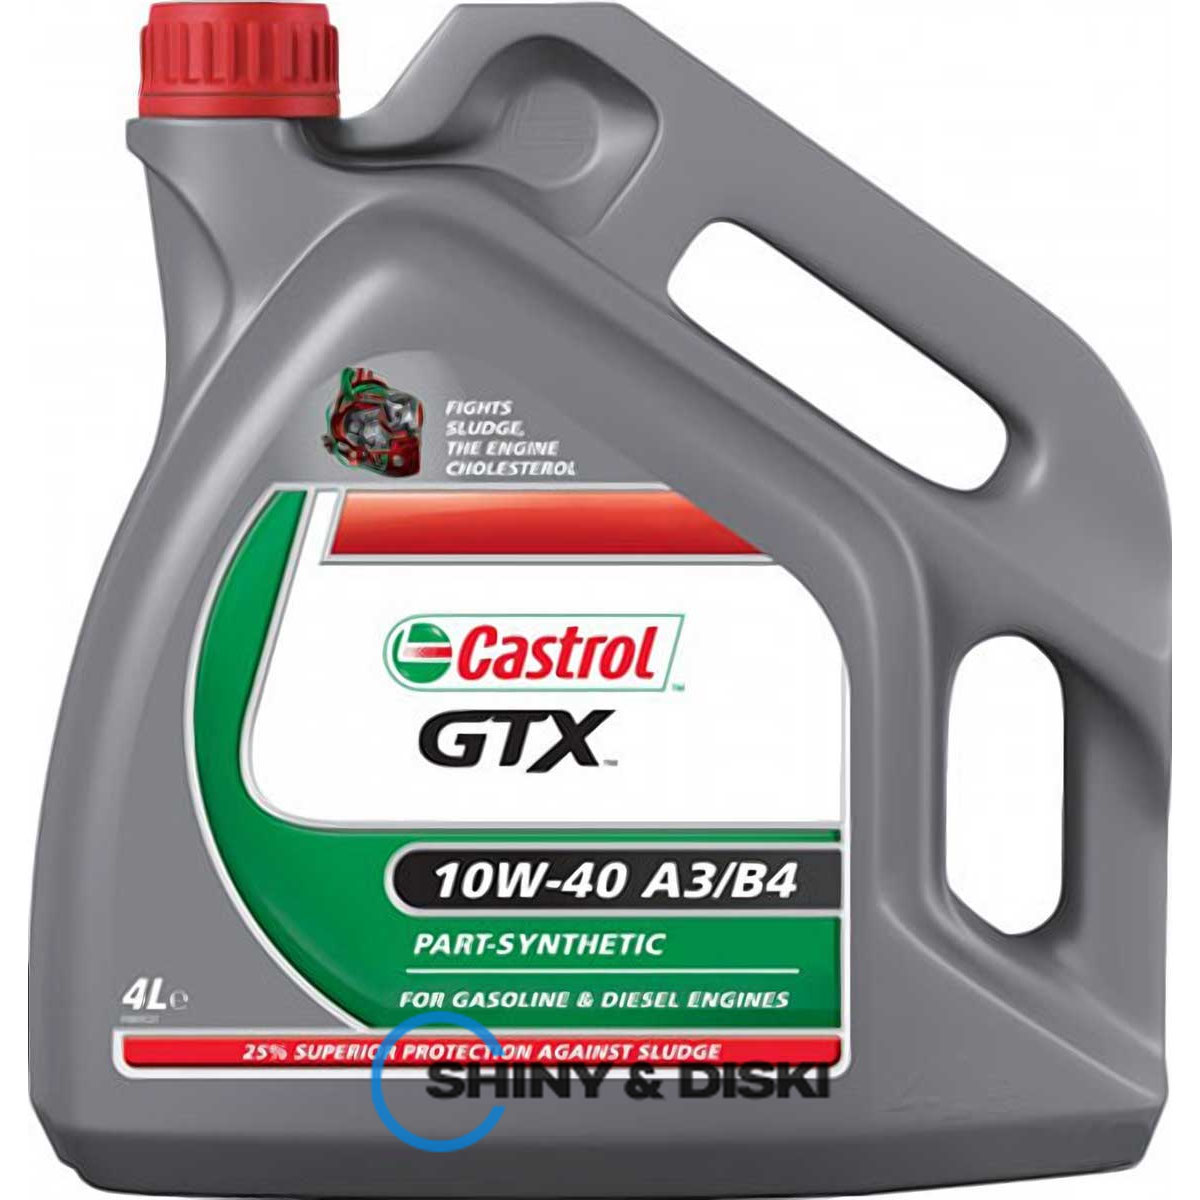 castrol gtx 10w-40 a3/b4 (4л)